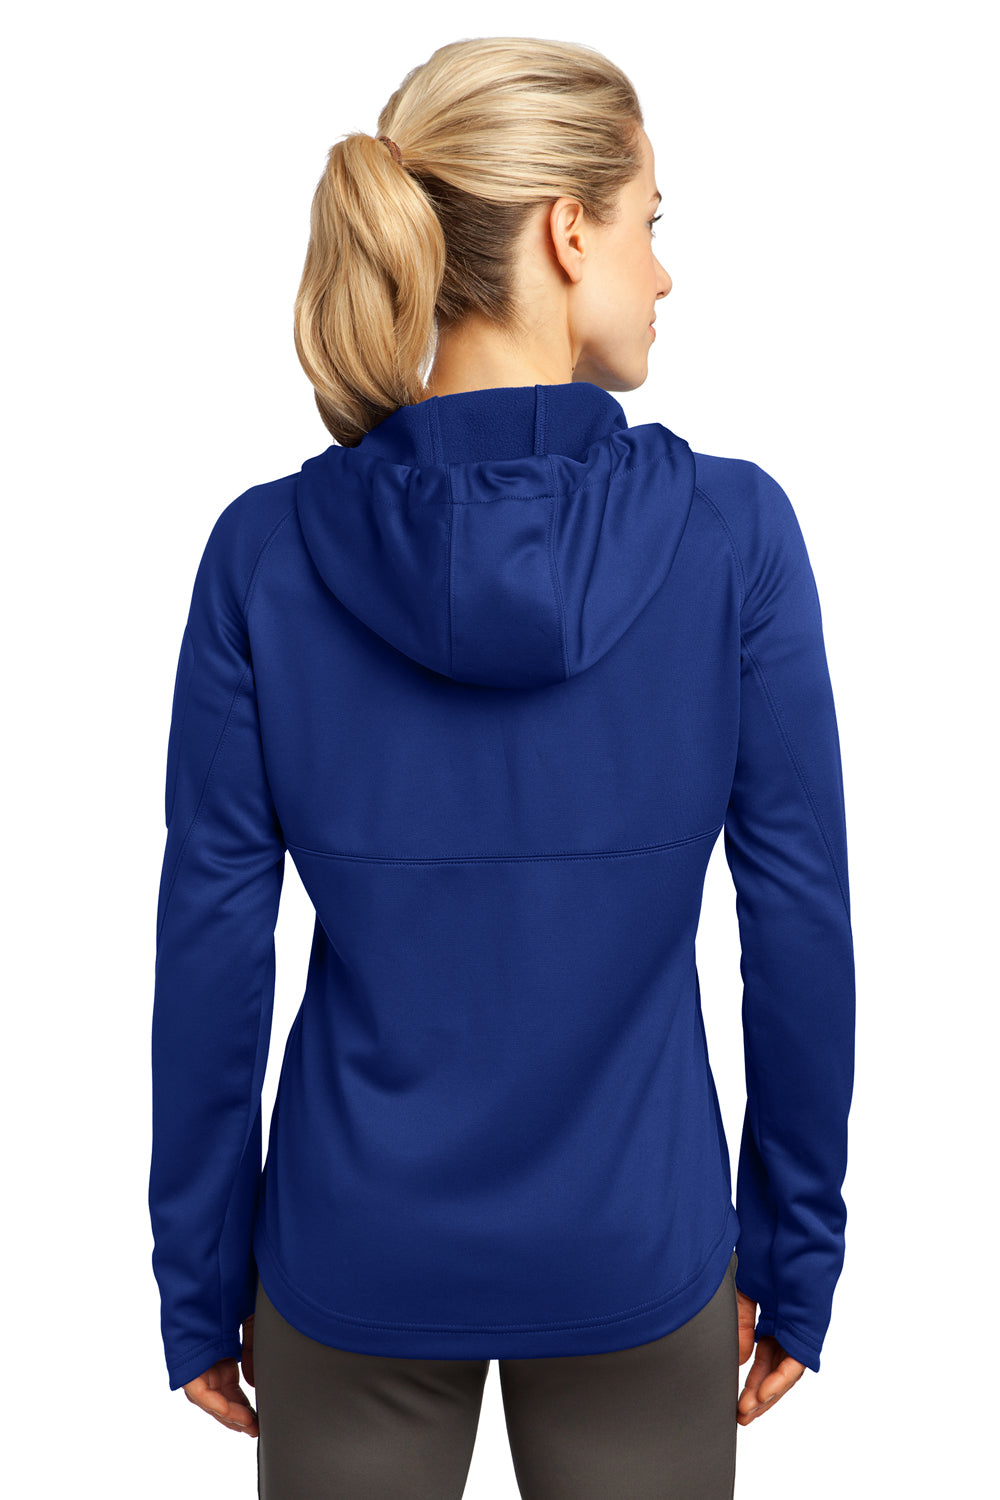 Sport-Tek L248 Womens Tech Moisture Wicking Fleece Full Zip Hooded Sweatshirt Hoodie Royal Blue Back